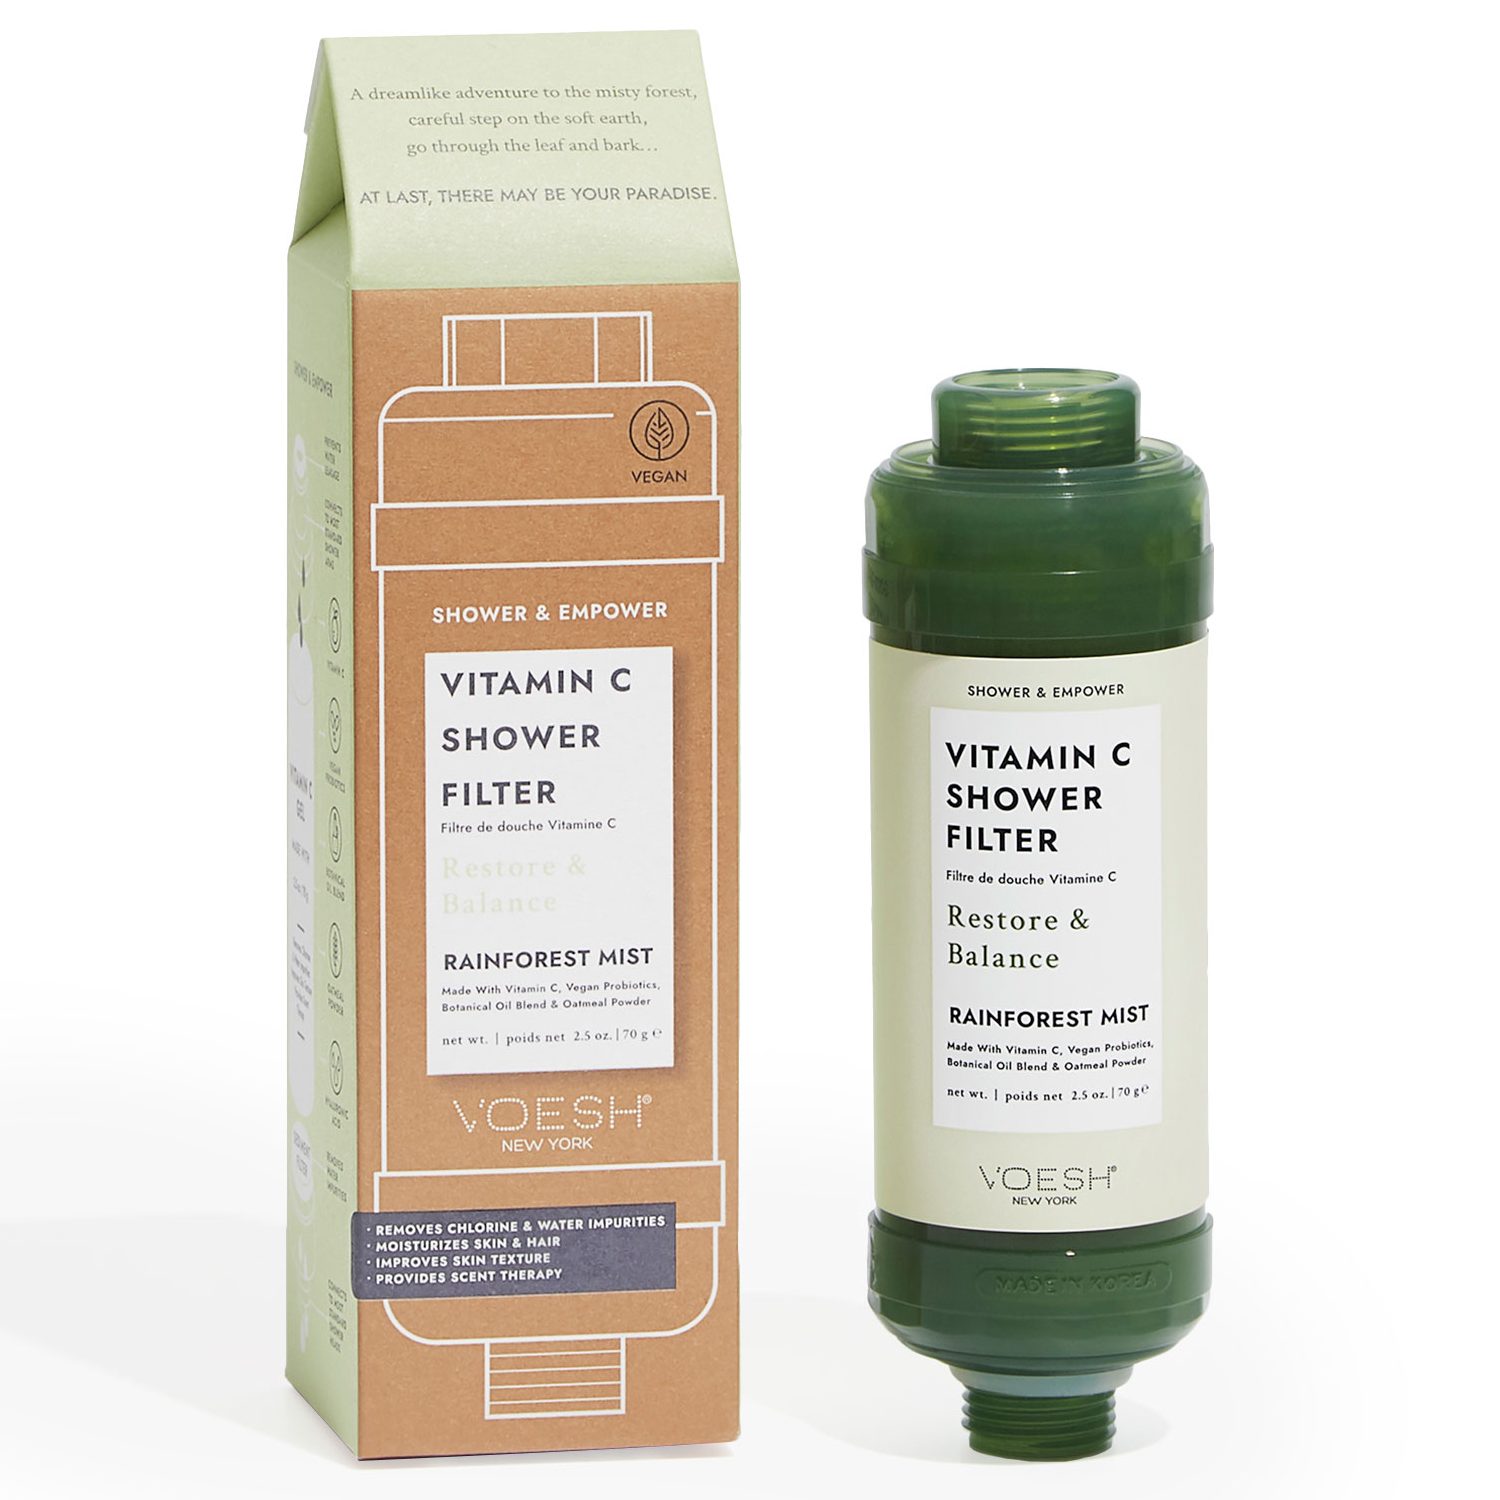 VOESH-Vitamin-C-Shower-Filter-Rainforest-Mist-70-1-2000px-uai-2000x1500